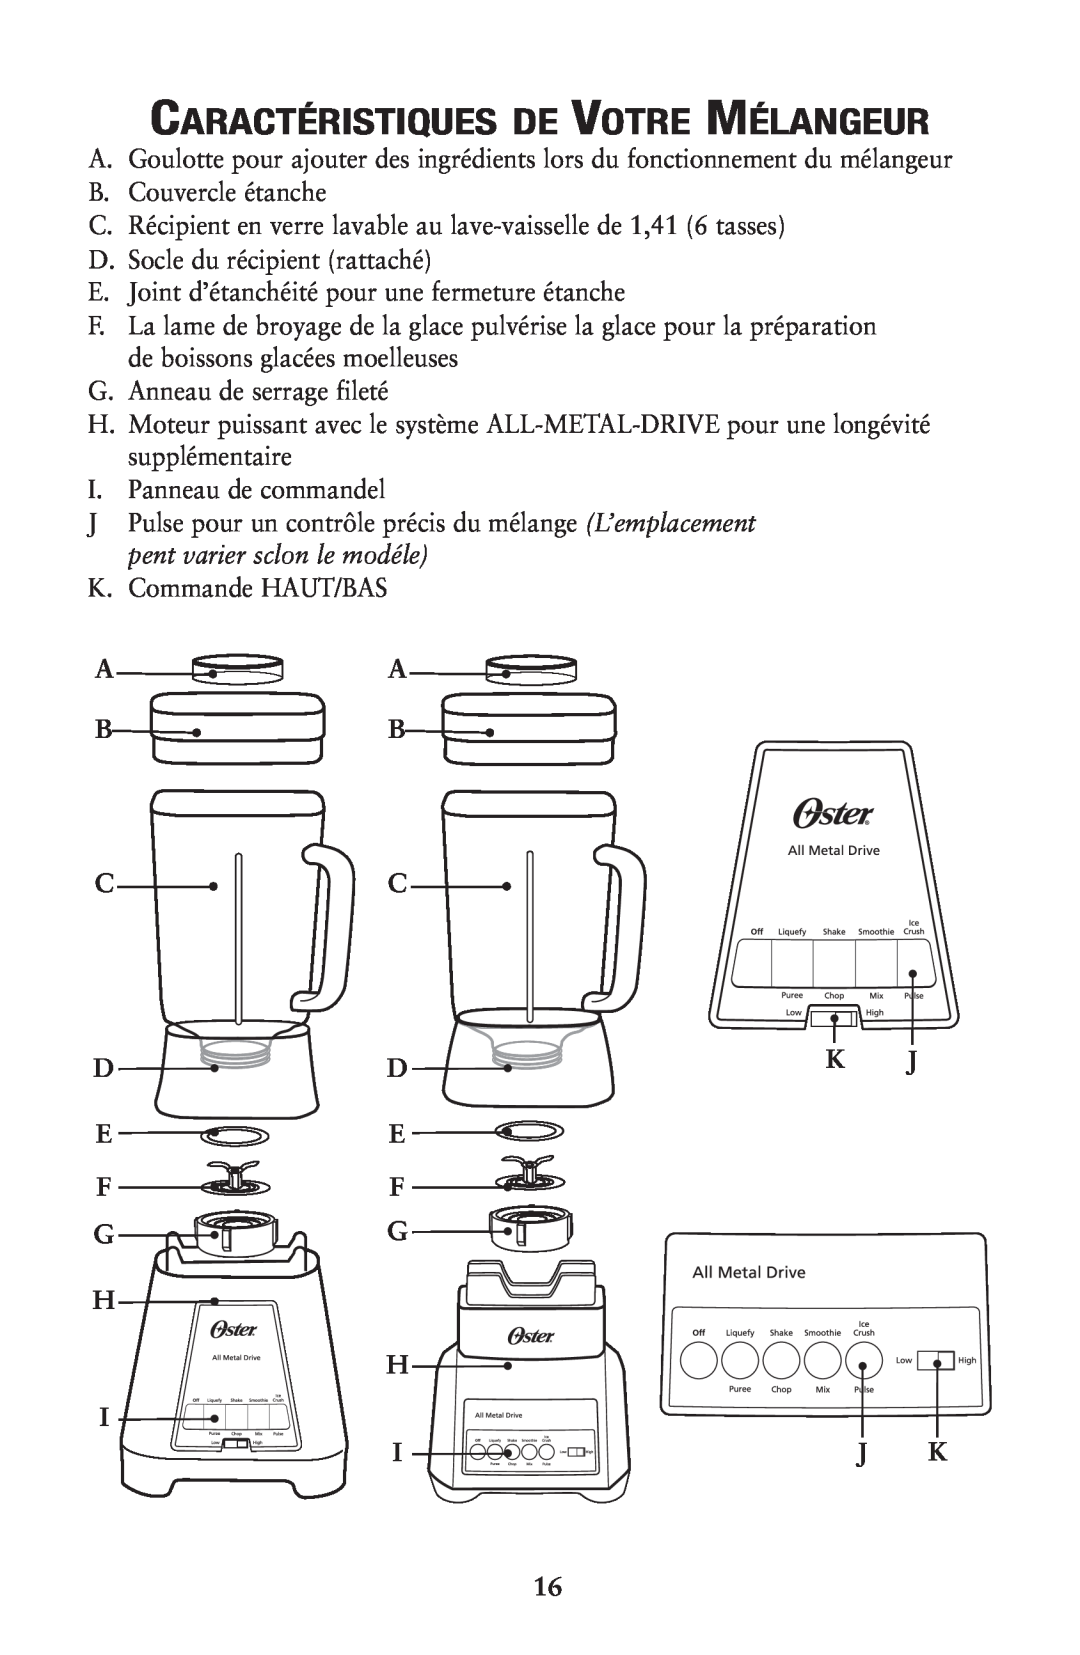 Oster 133086, Designer Series Push Button Blenders user manual Caractéristiques De Votre Mélangeur 